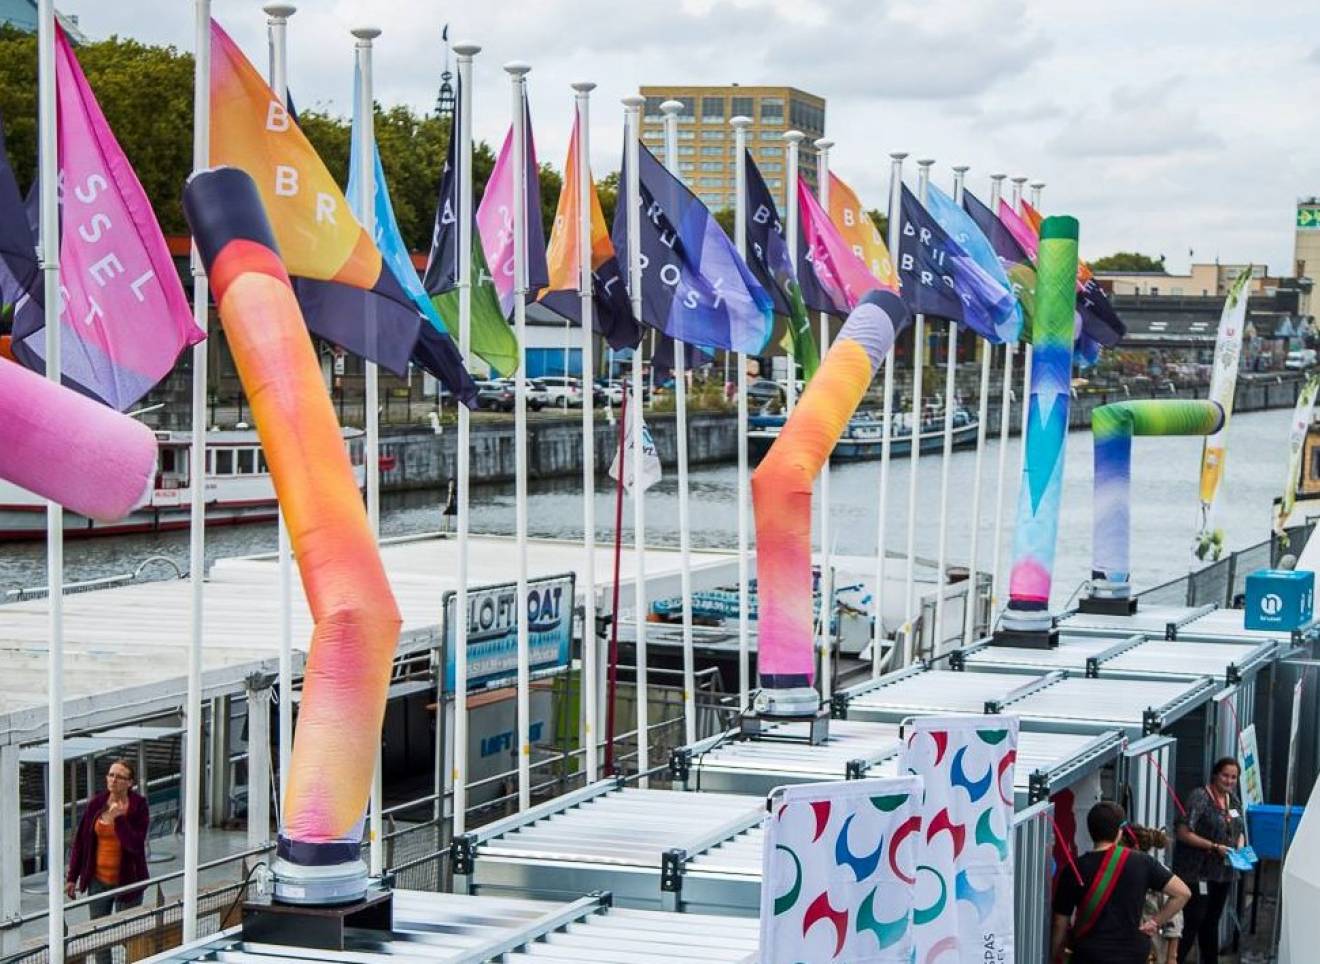 Riesige aufblasbare Skydancer Bewegen von farbig bedruckten aufblasbaren Schläuchen mit gemieteten Gebläsen für die Brüsseler Brost-Veranstaltung entlang des Kanals X-Treme Creations